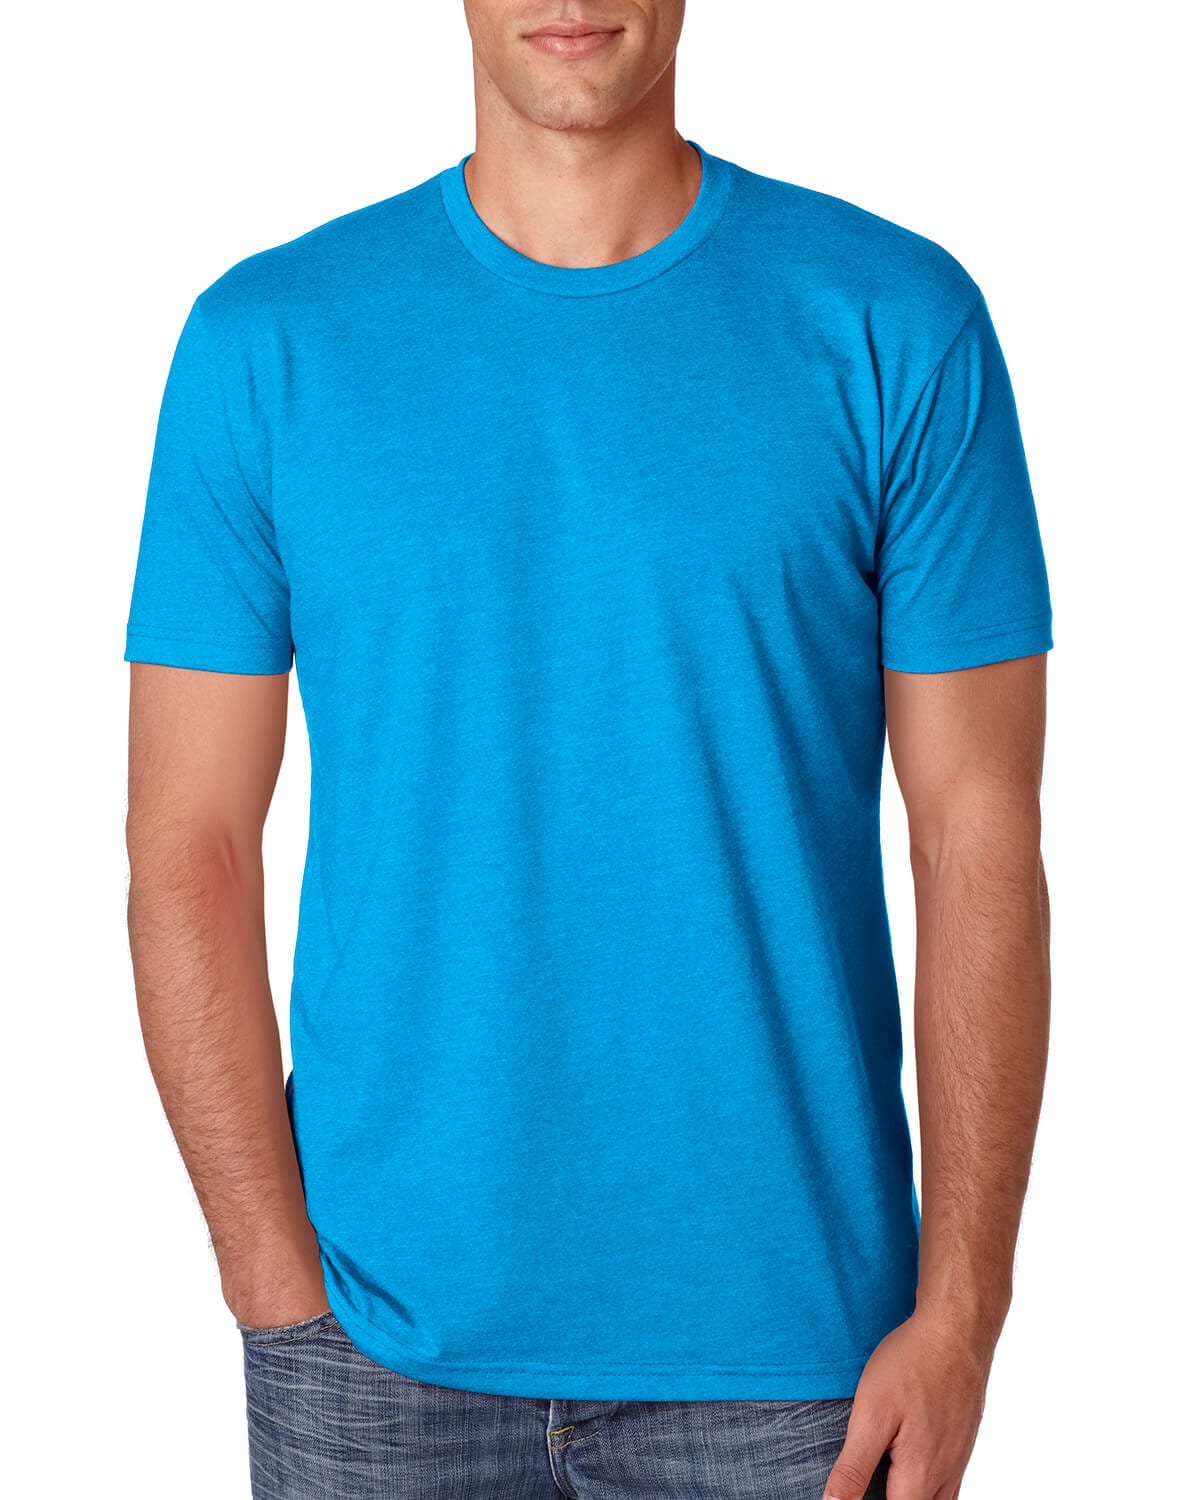 Blue-Tshirt-Swag.com